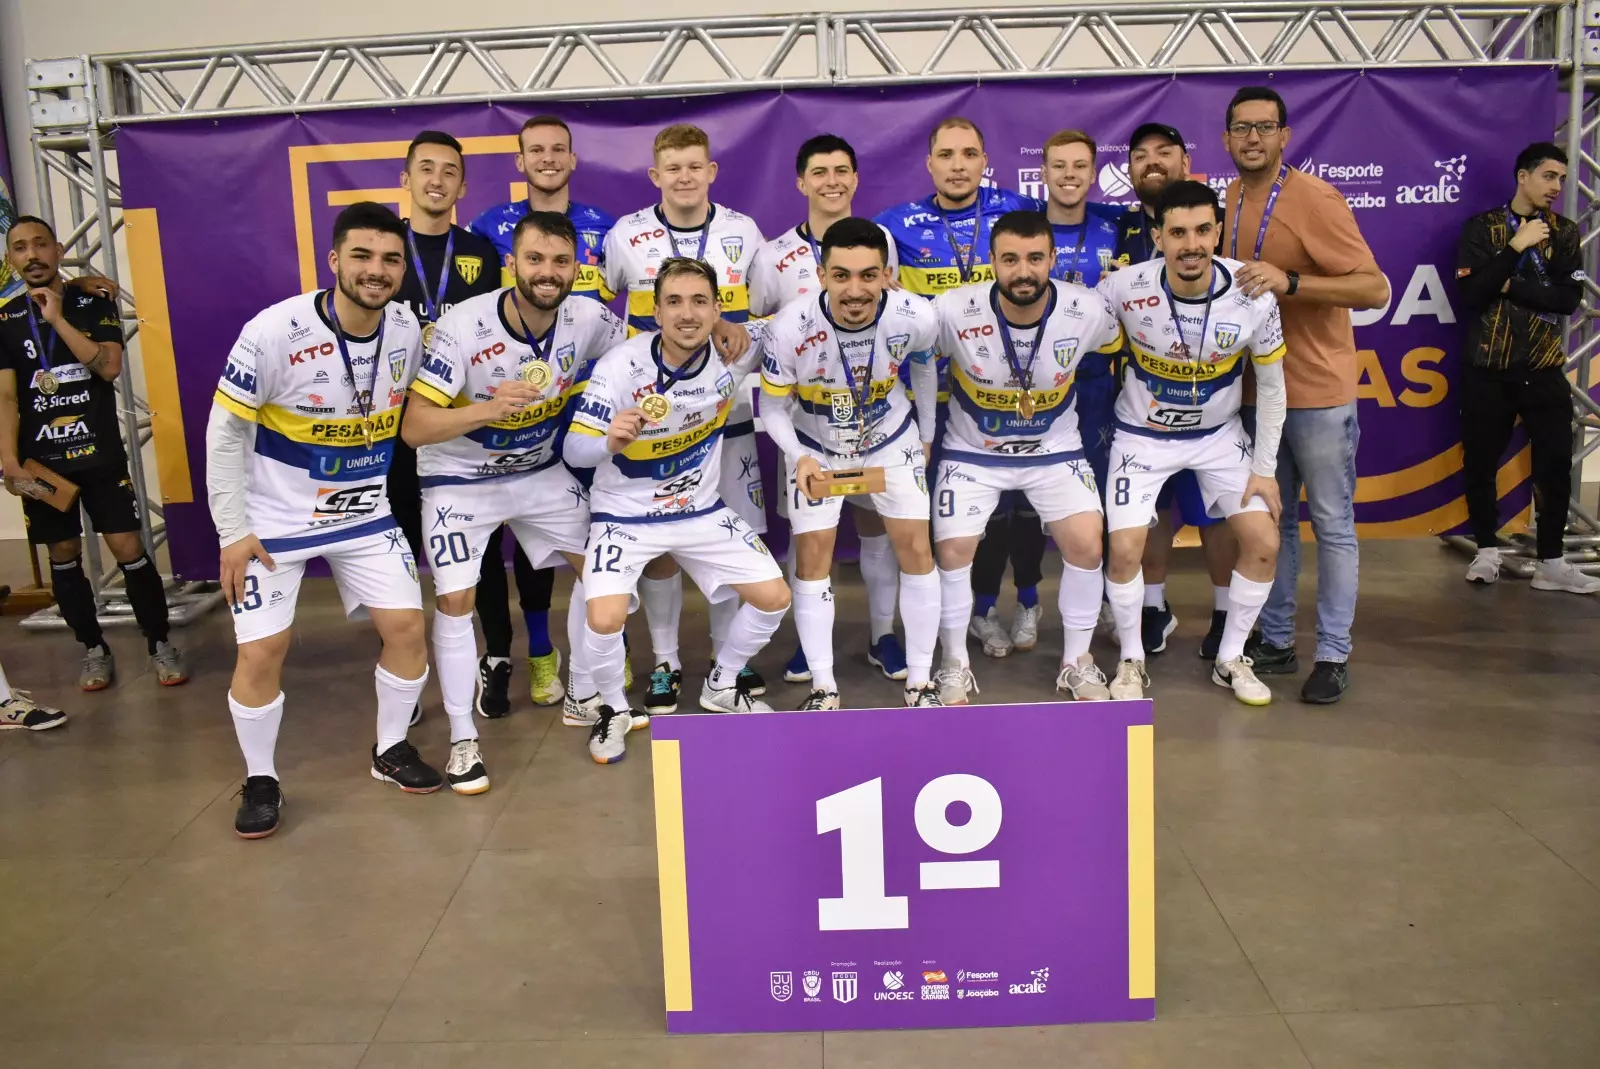 Fundação Municipal de Esportes de Lages Lages Futsal/Uniplac representa o estado na maior competição universitária da América Latina